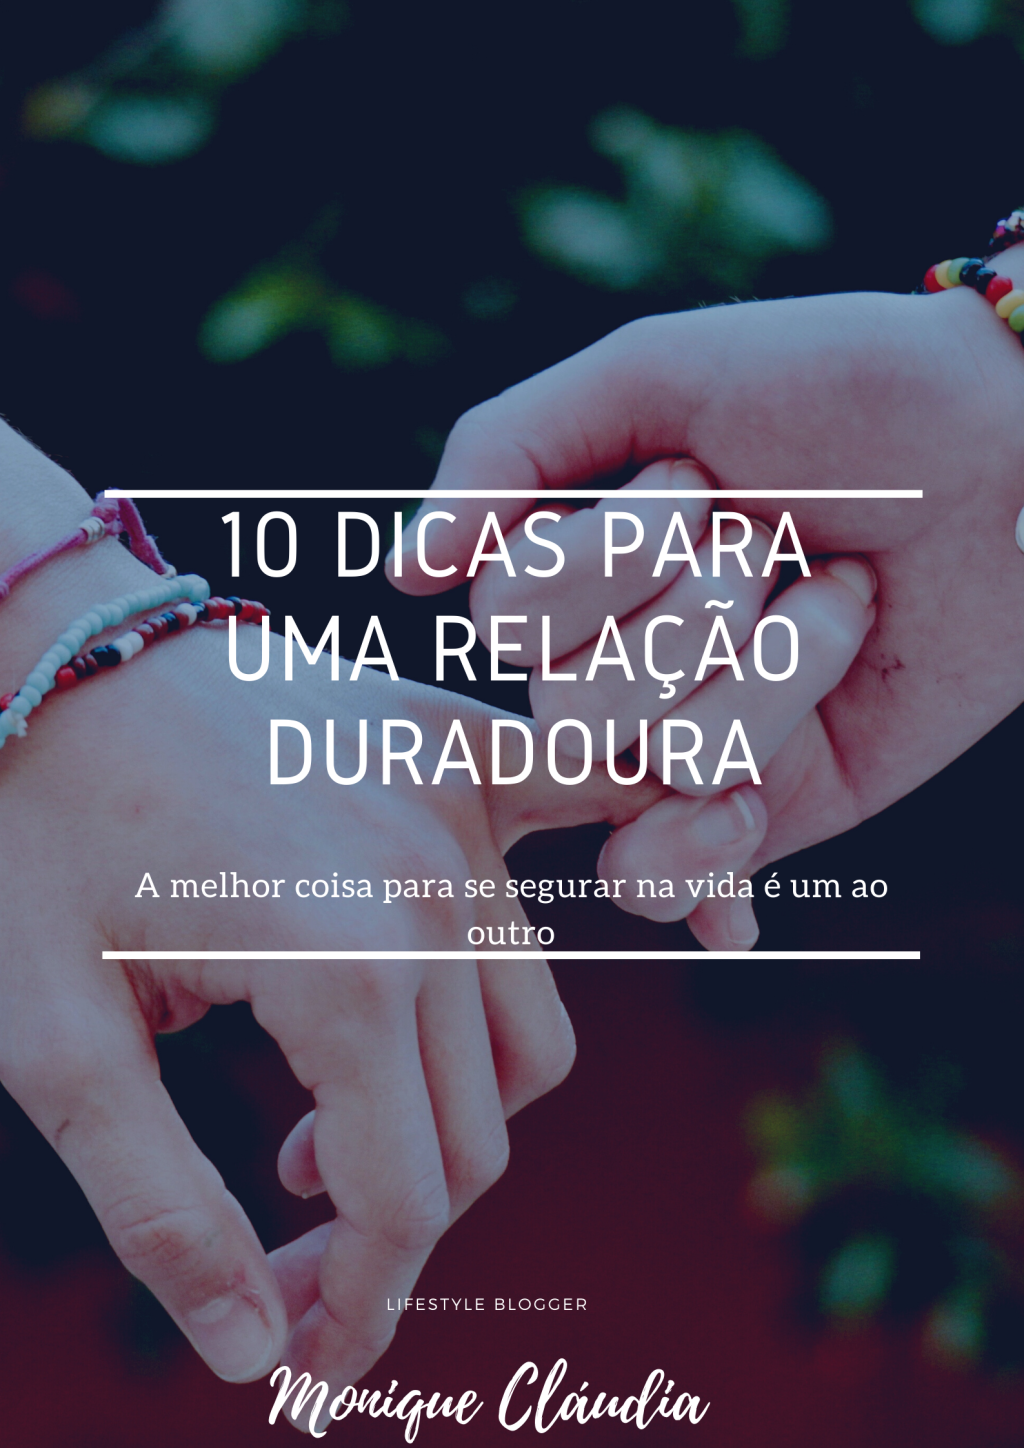 10 TIPS TO A LONG LASTING RELATIONSHIP/ 10 DICAS PARA UMA RELAÇÃO DURADOURA